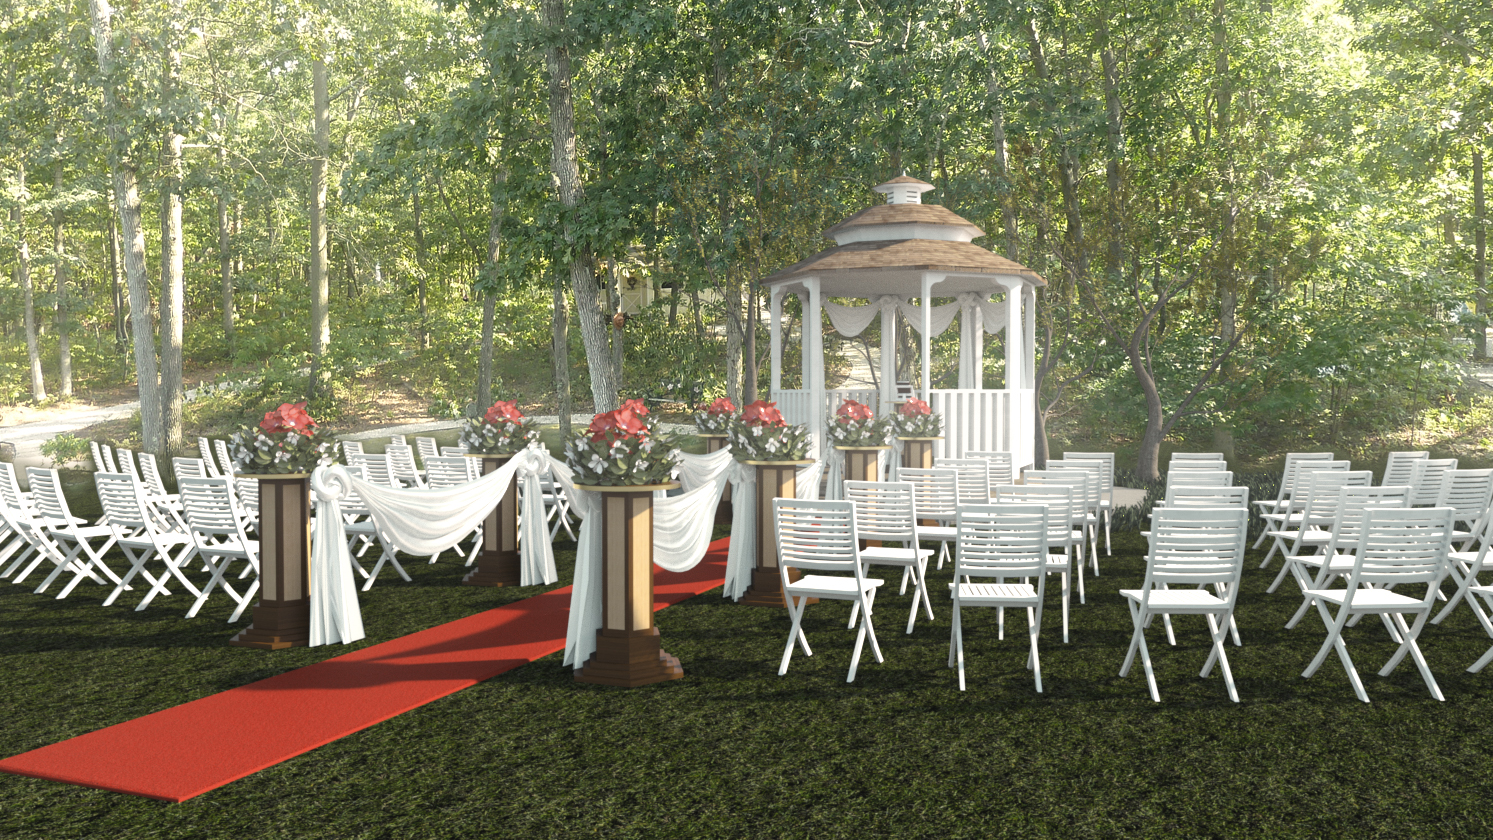 Garden Wedding by: Digitallab3D, 3D Models by Daz 3D